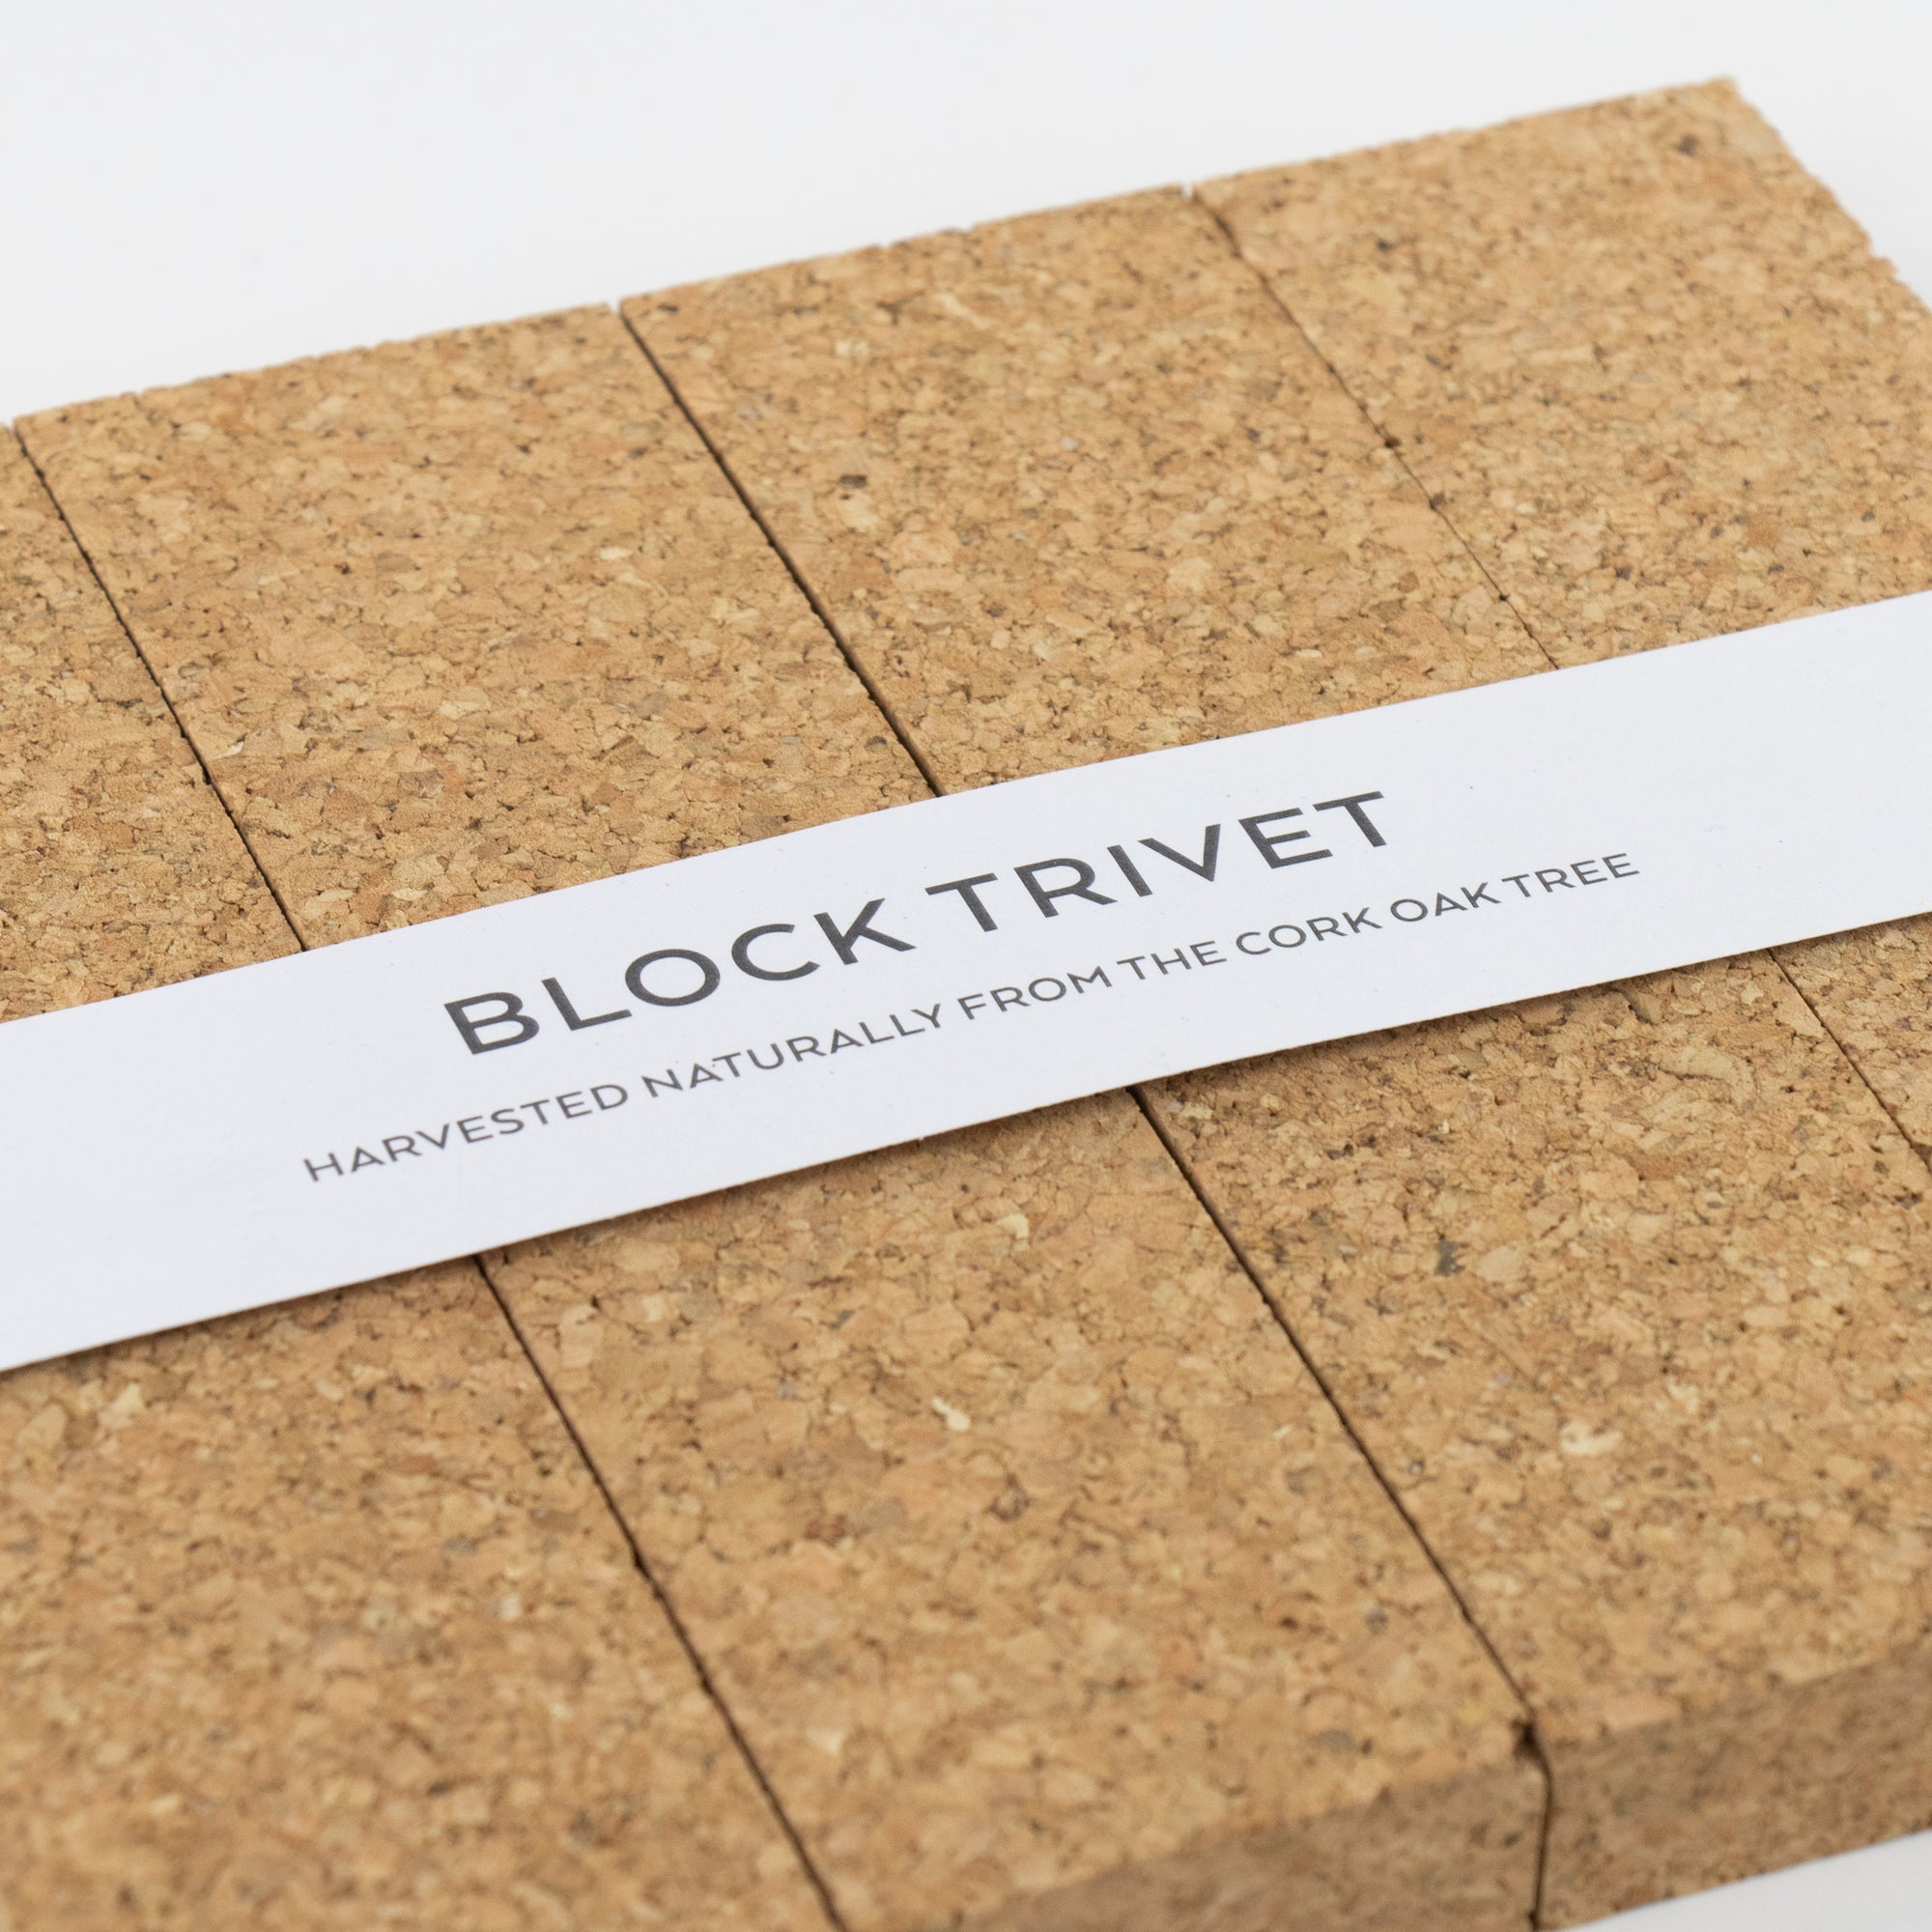 Organic cork block trivet with rope handles